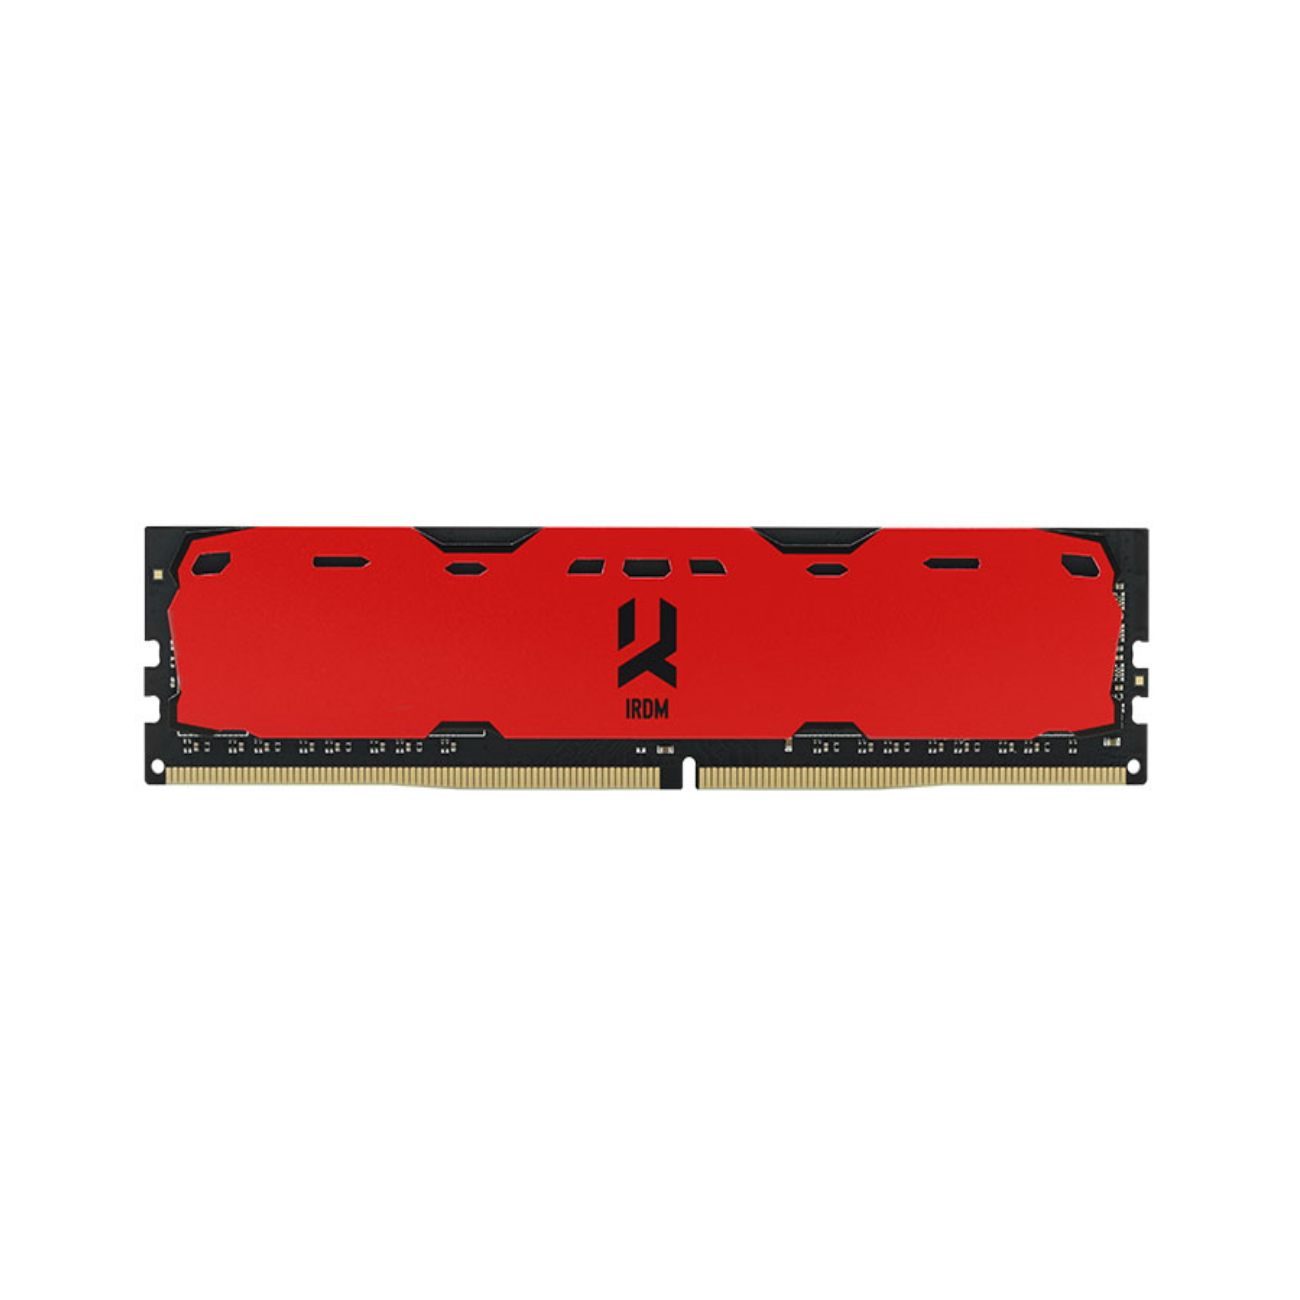 GOODRAM IRDM 4GB 2400MHz CL15 DIMM SR GB DDR4 4 RED Arbeitsspeicher